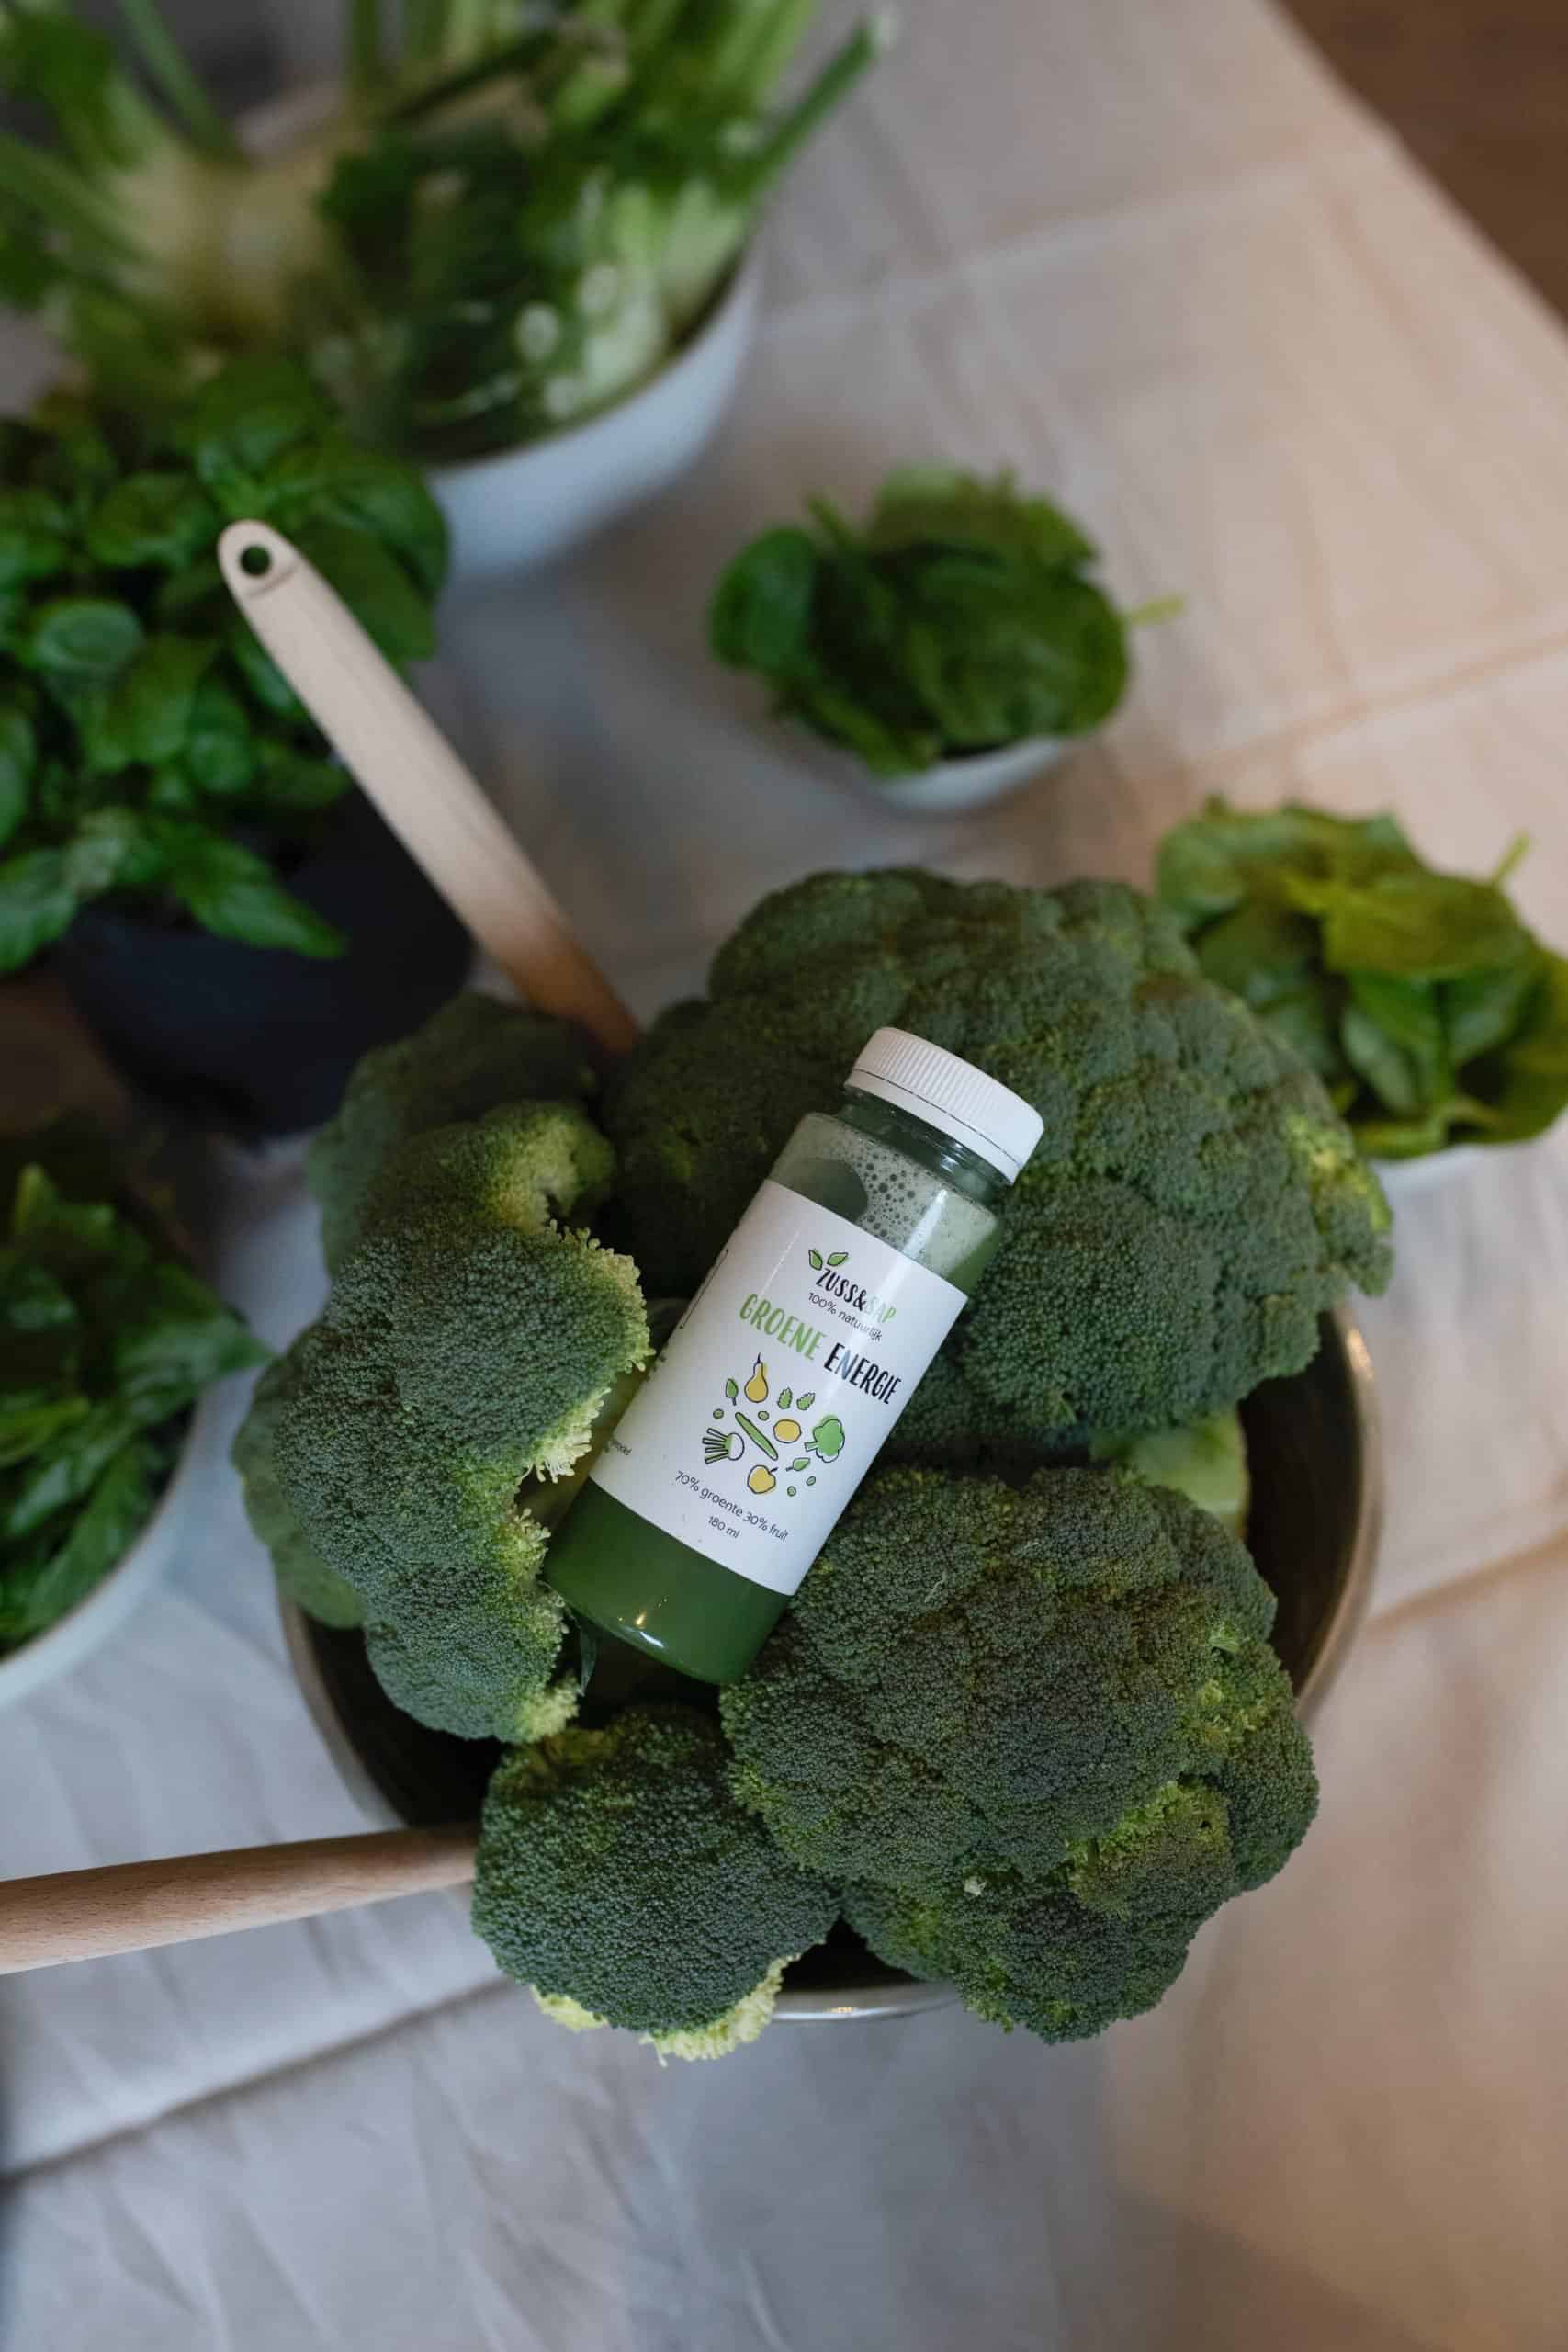 De gezondheidsvoordelen van broccoli